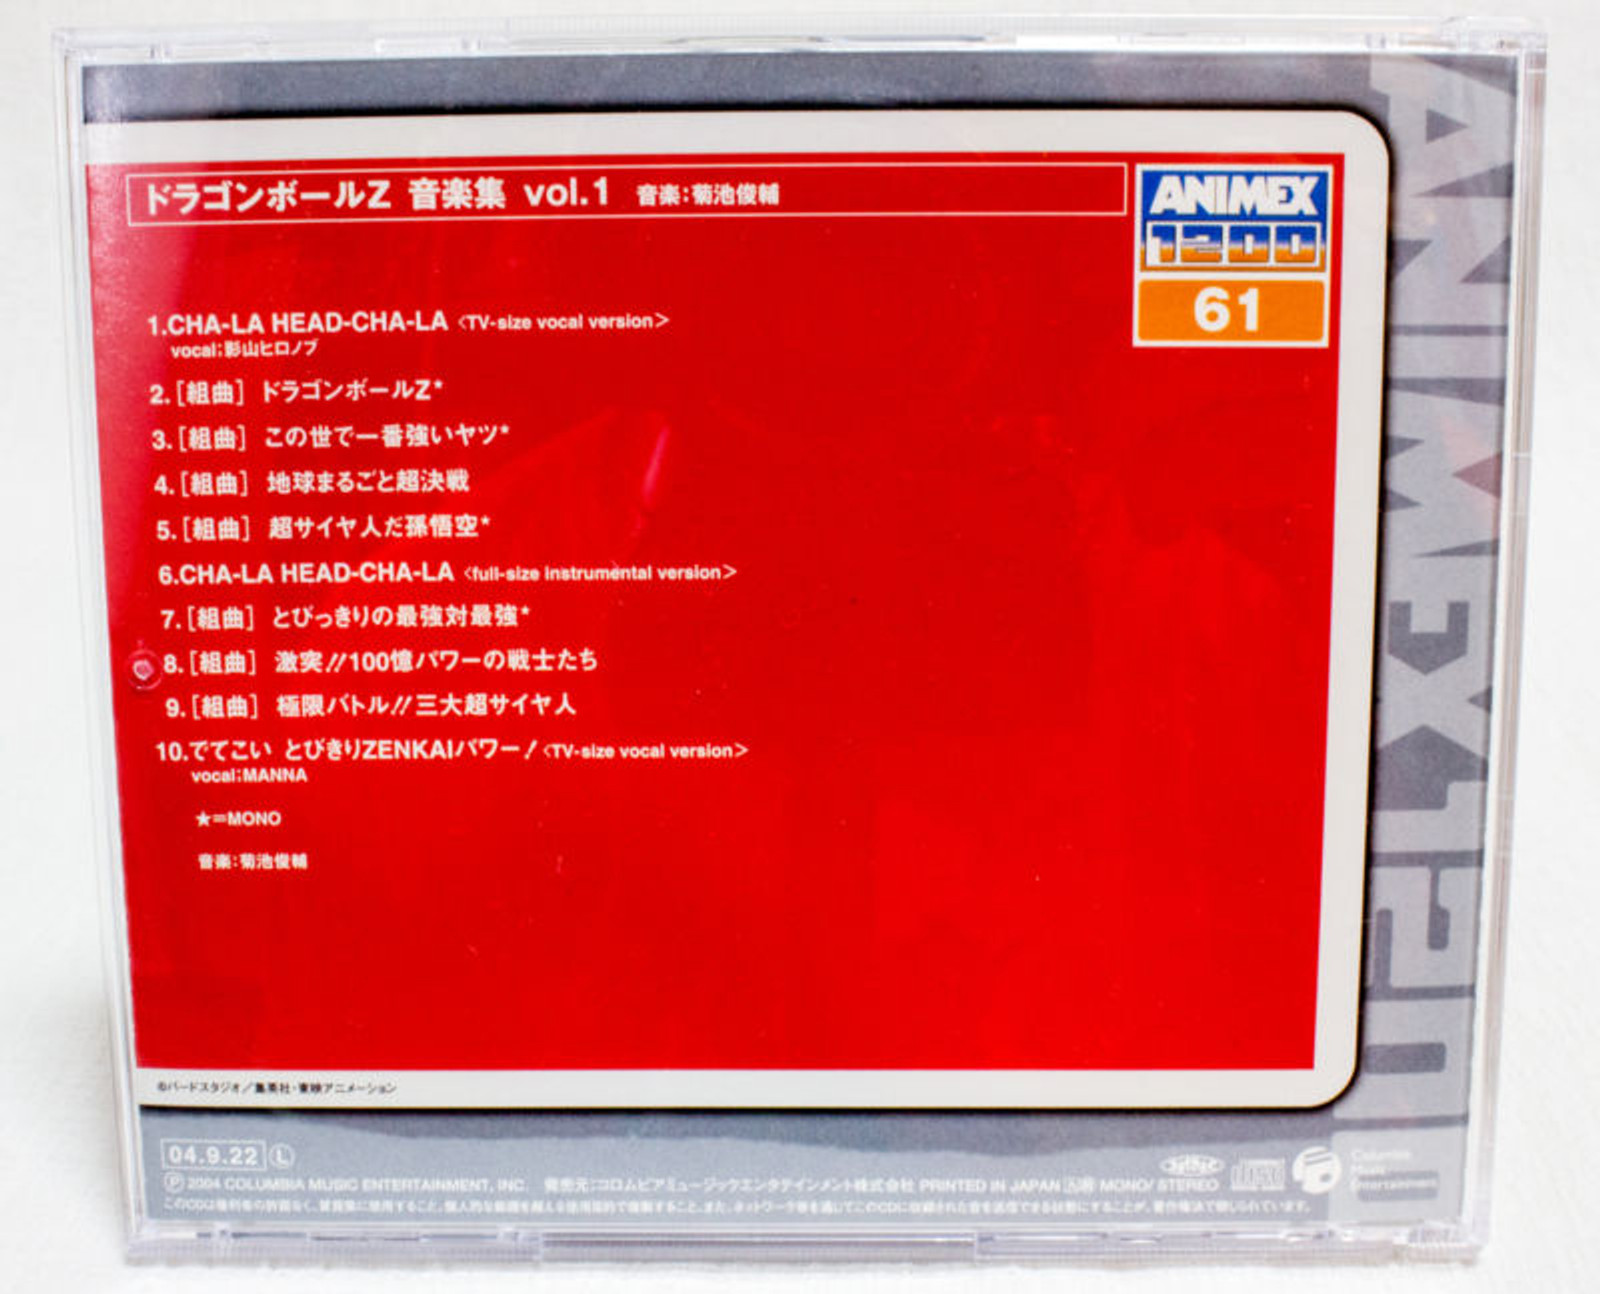 Dragon Ball Z Music Collection Vol.01 CD 10 Songs JAPAN ANIME MANGA